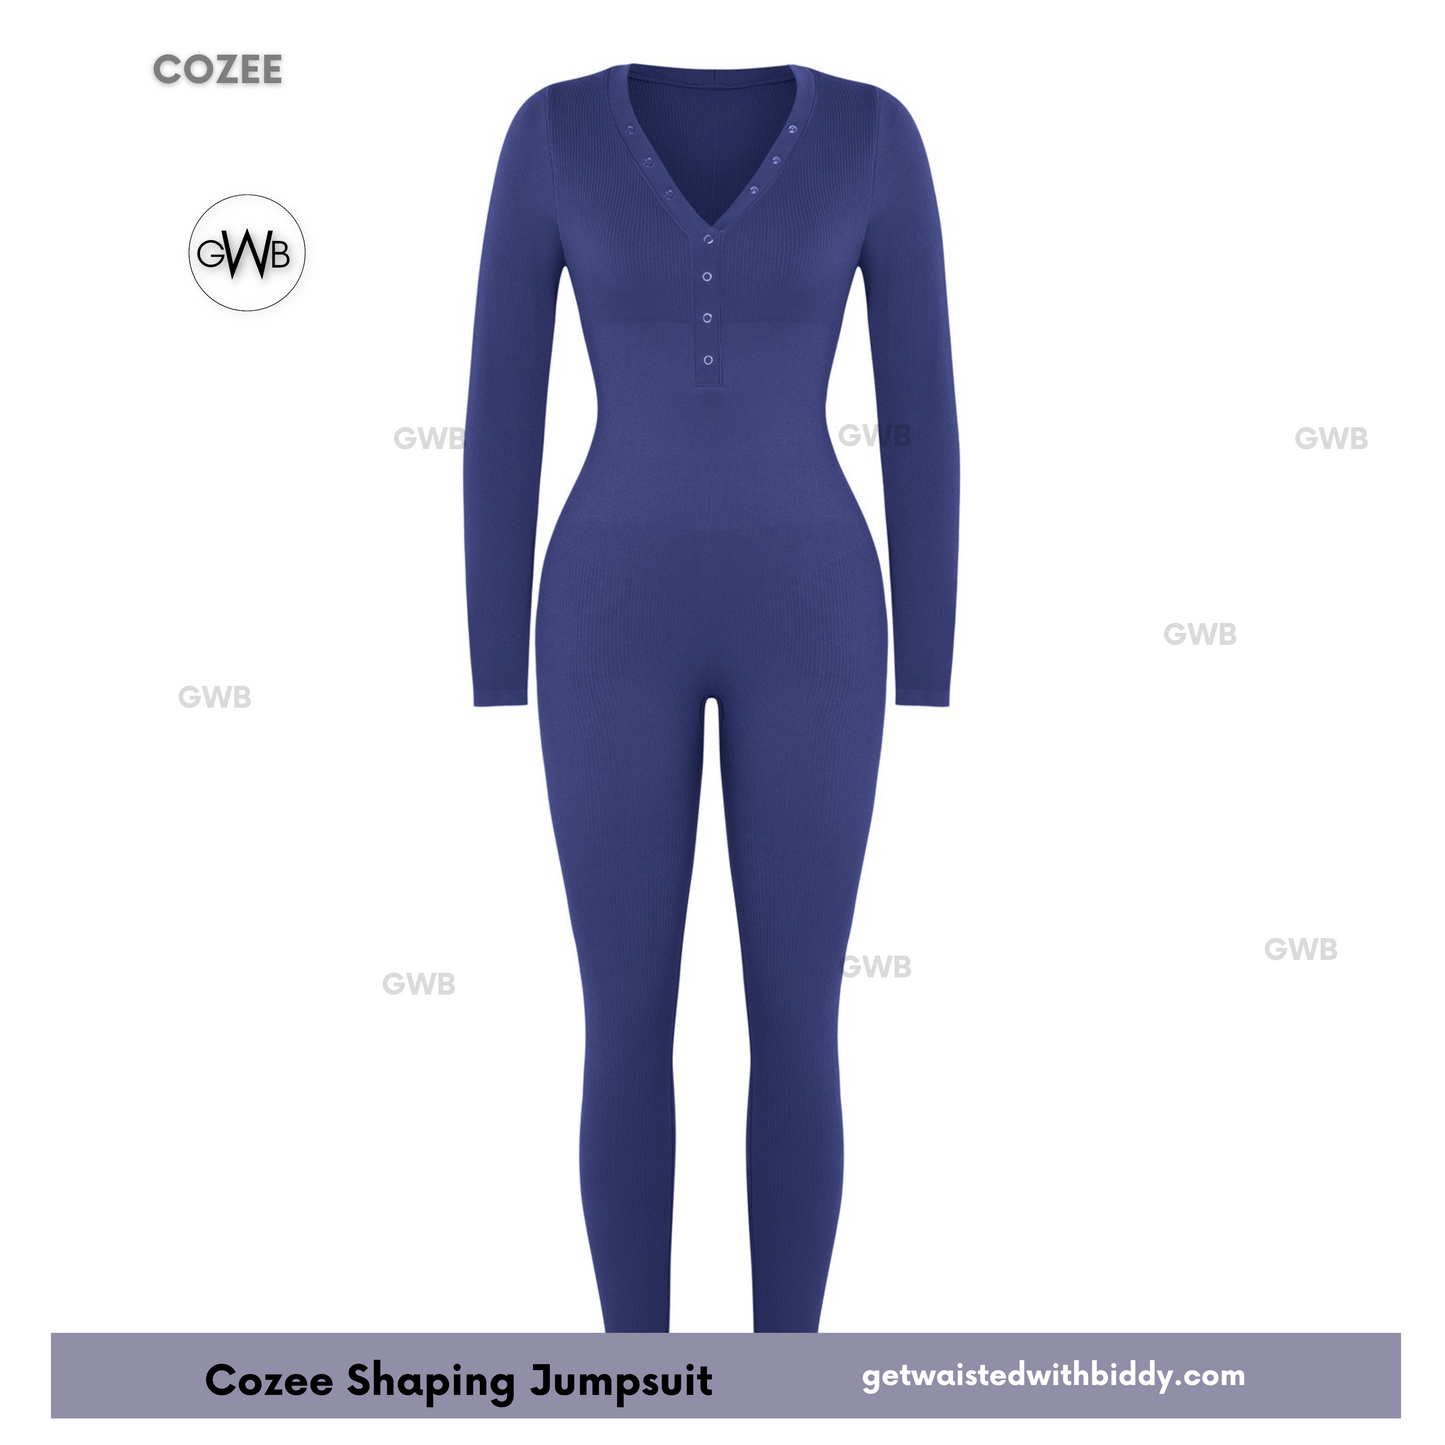 NEW! GWB Cozee Loungewear Jumpsuit Bodysuit Blue